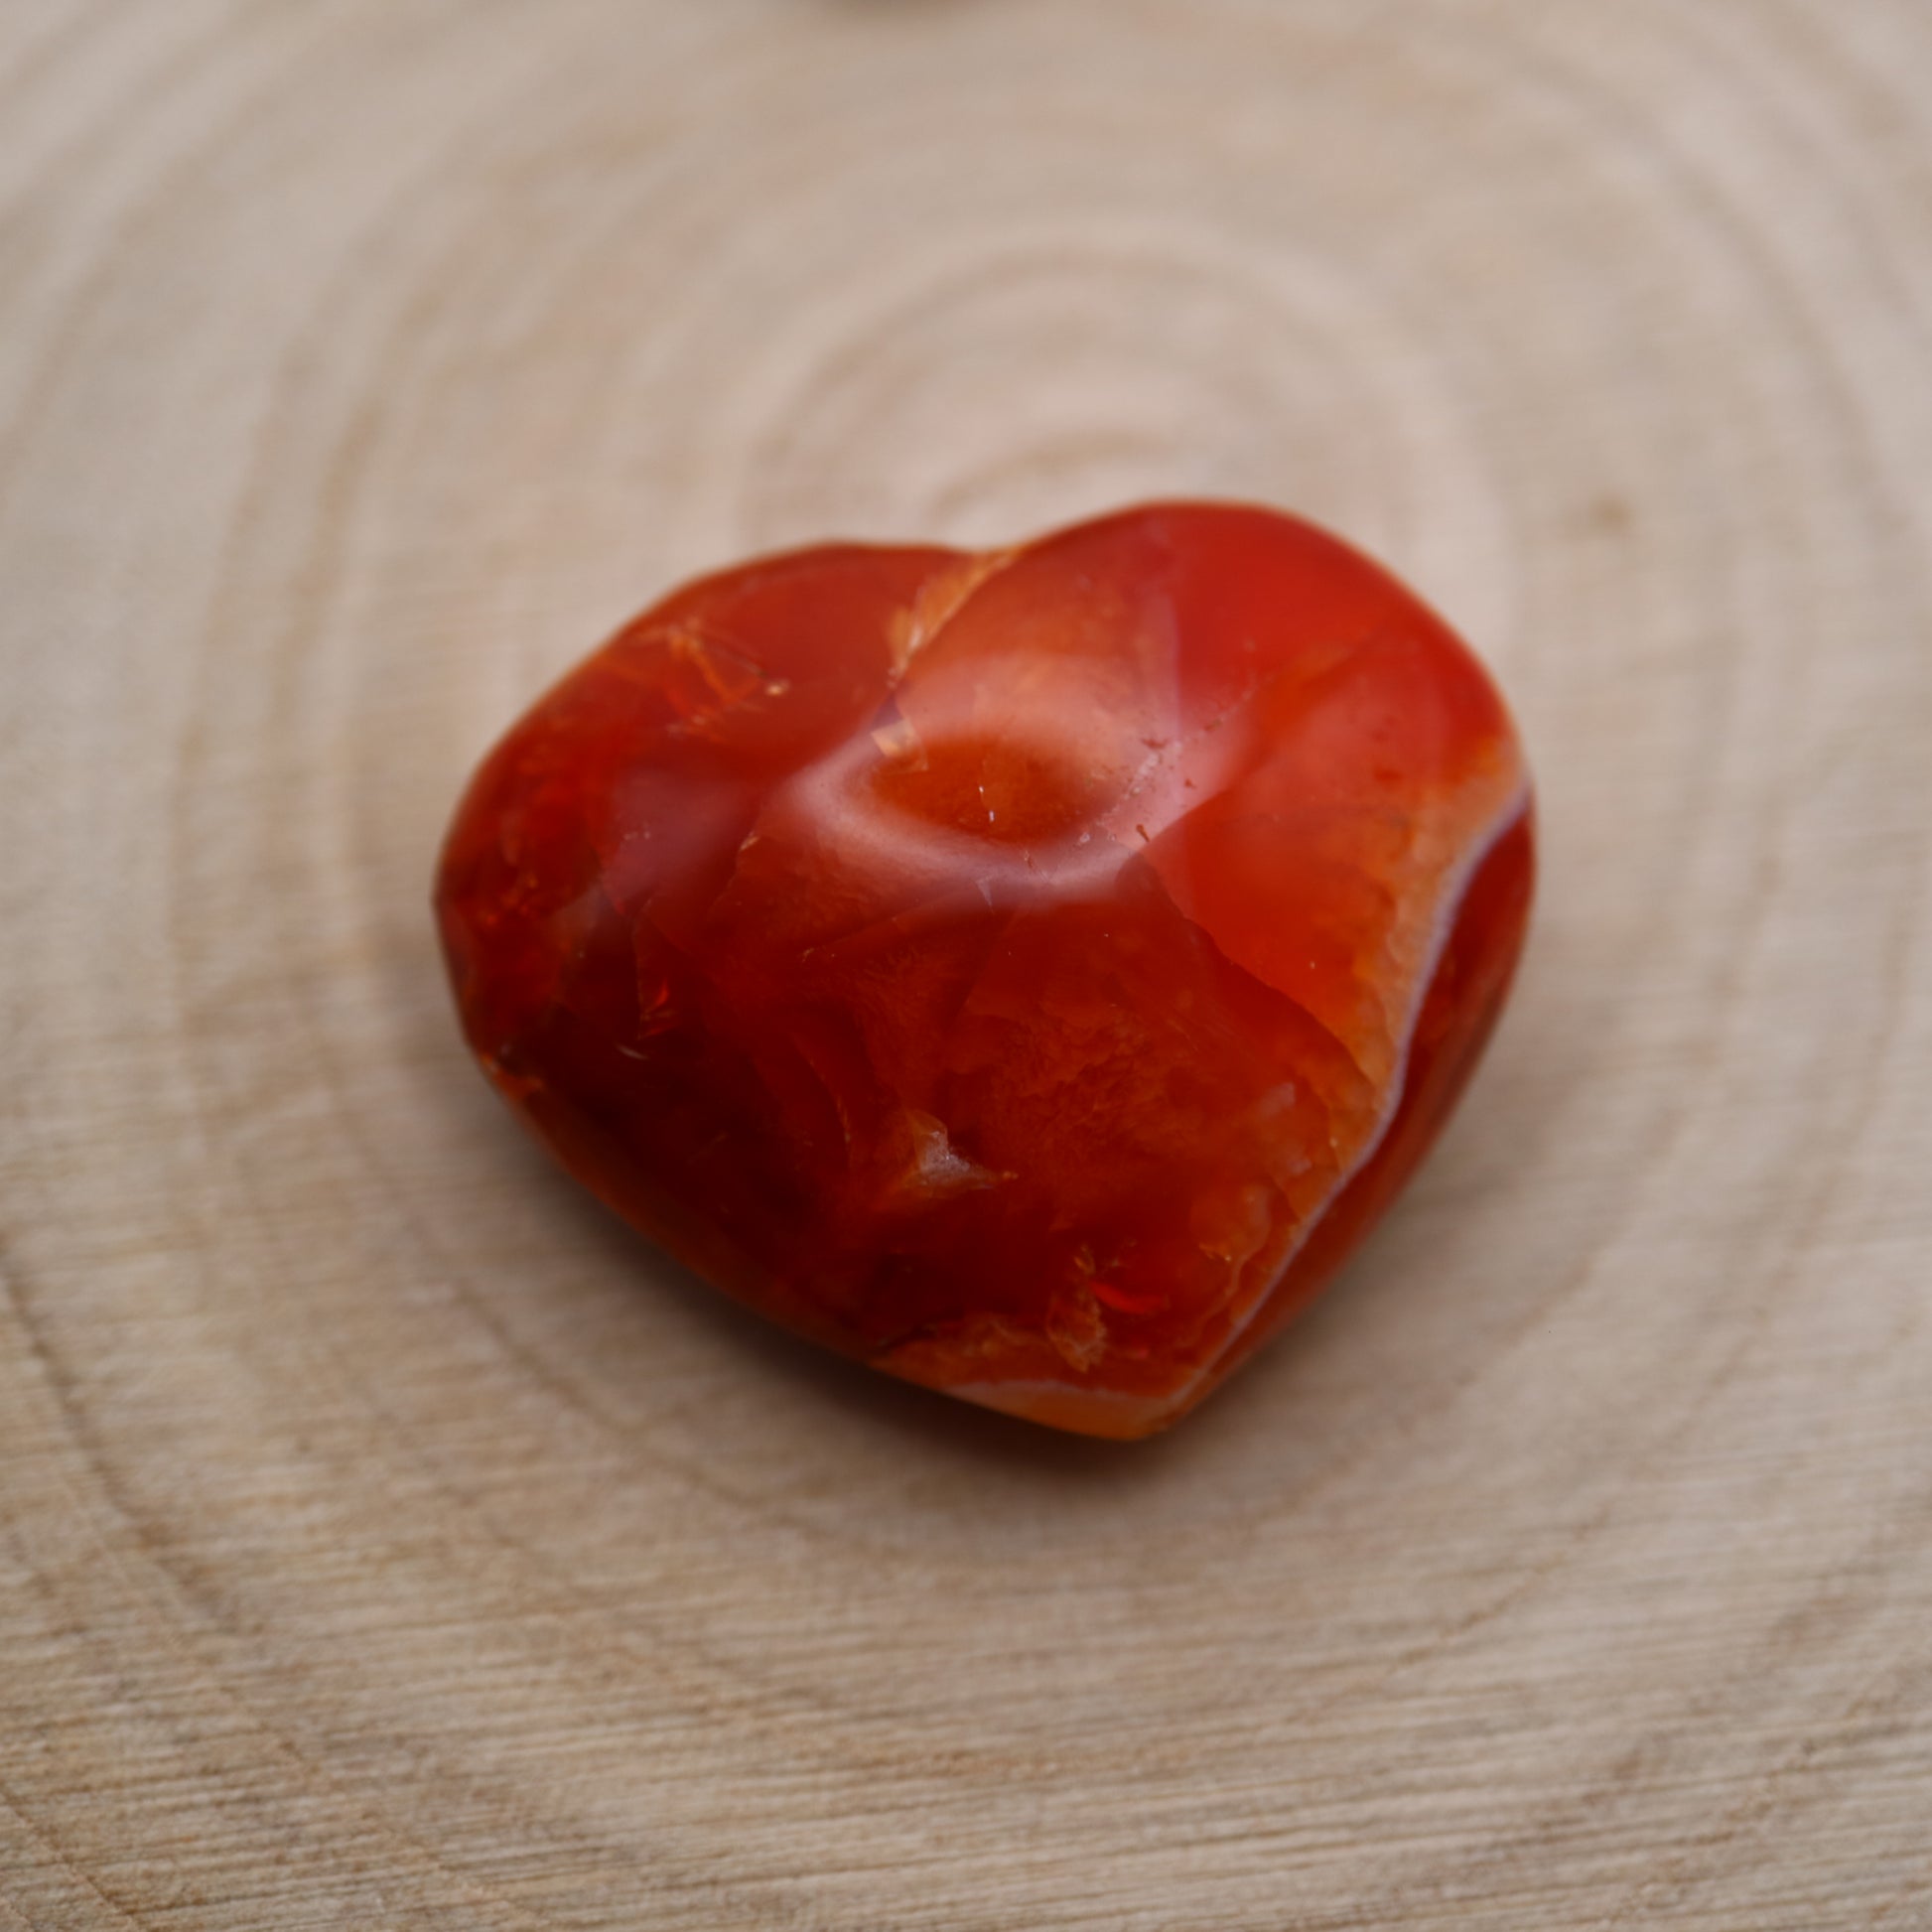 Carnelian crystal in the shape of a heart